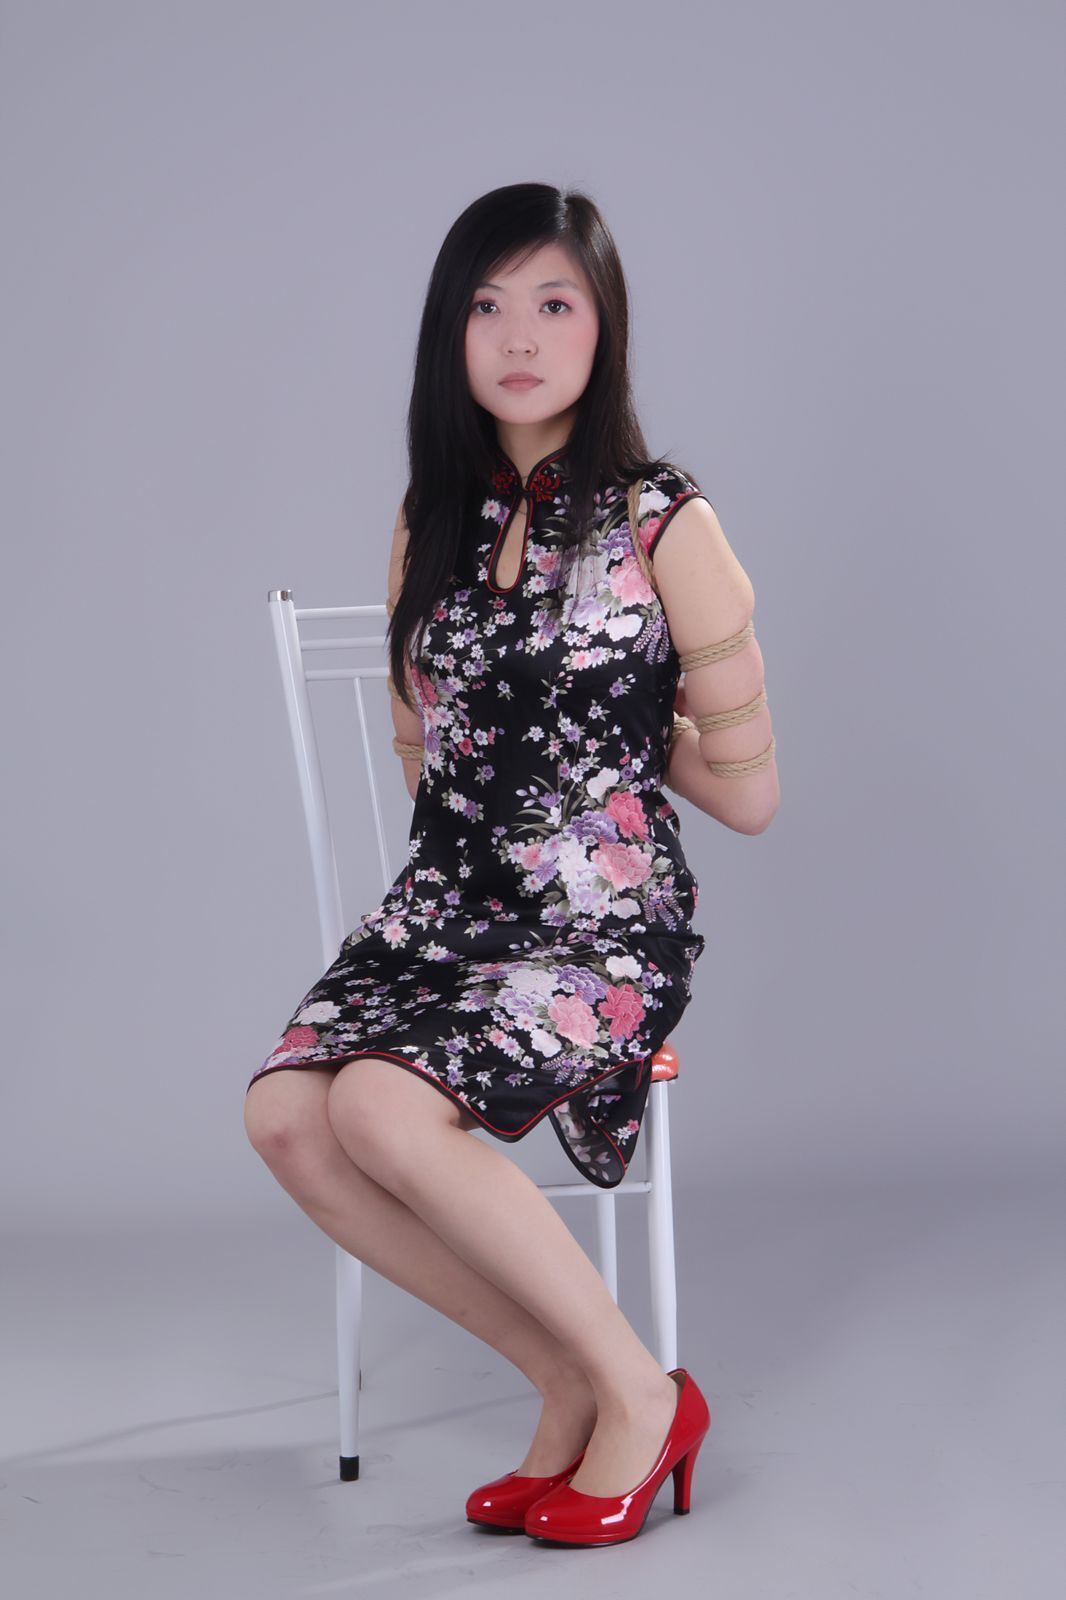 Shenyiyuan 2010.04.12 no.011 model Feifei